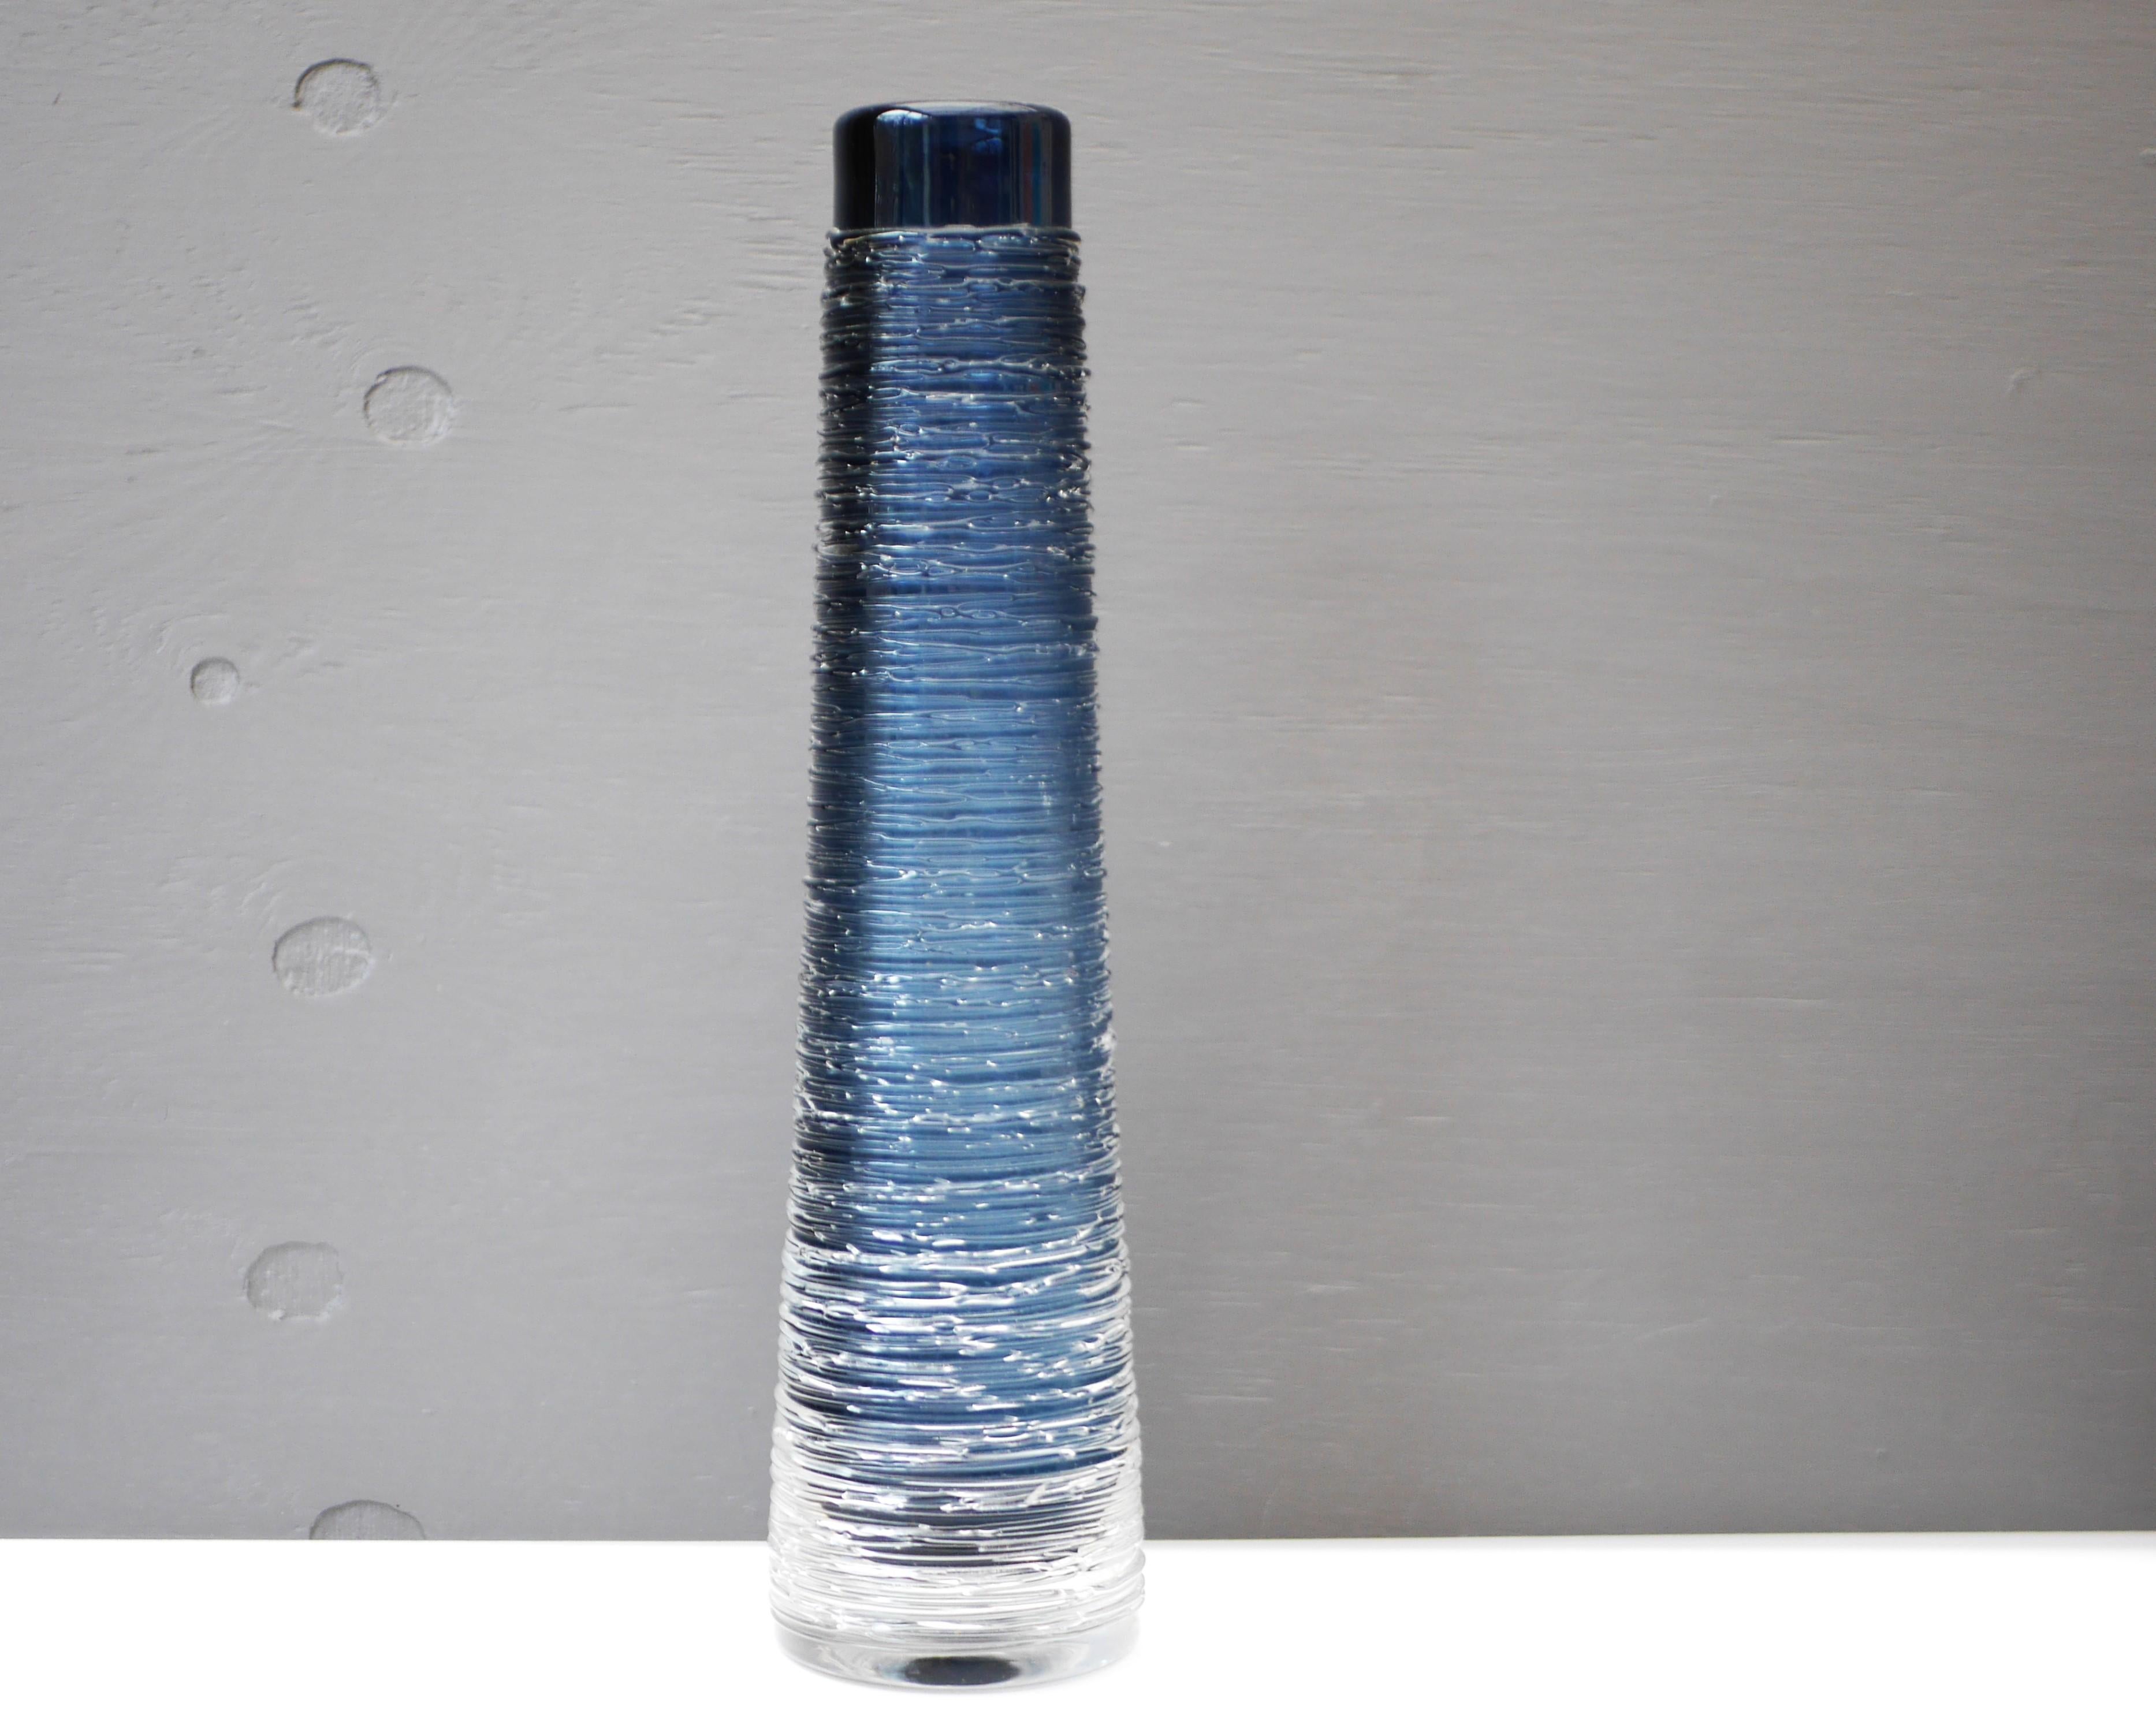 A large, dark blue glass vase by Bengt Edenfalk for Skruf Glassworks in Sweden, signed. From the 'Spun' series of vases. 

Bengt Edenfalk (1924-2016), was a Swedish glass designer, painter, graphic artist and sculptor, he was also involved in